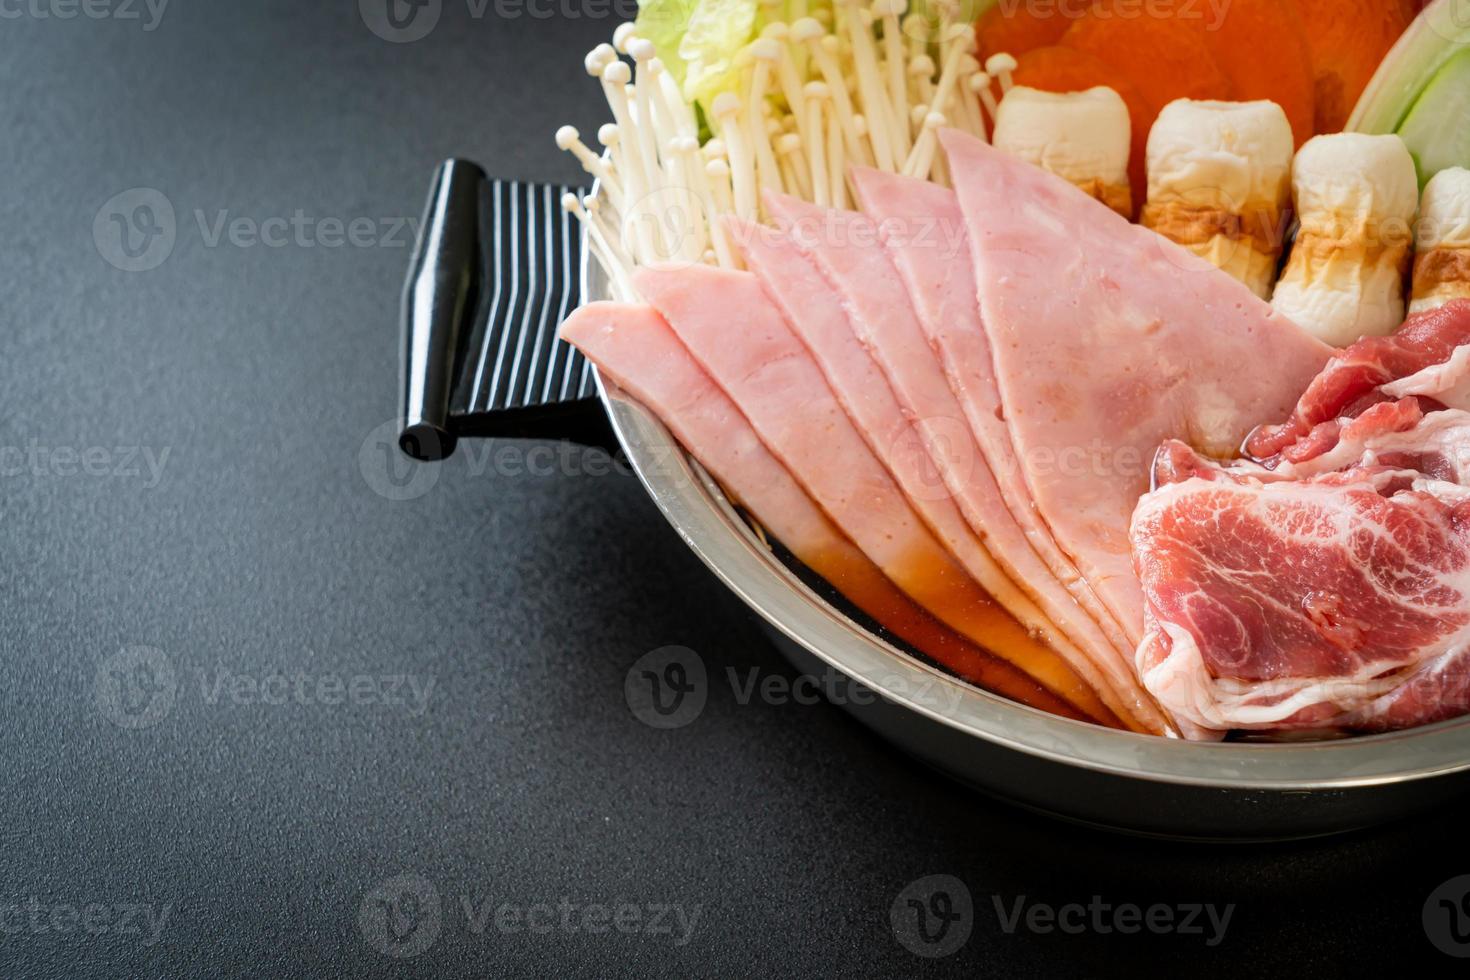 soupe noire sukiyaki ou shabu hot pot avec de la viande crue et des légumes - style de cuisine japonaise photo